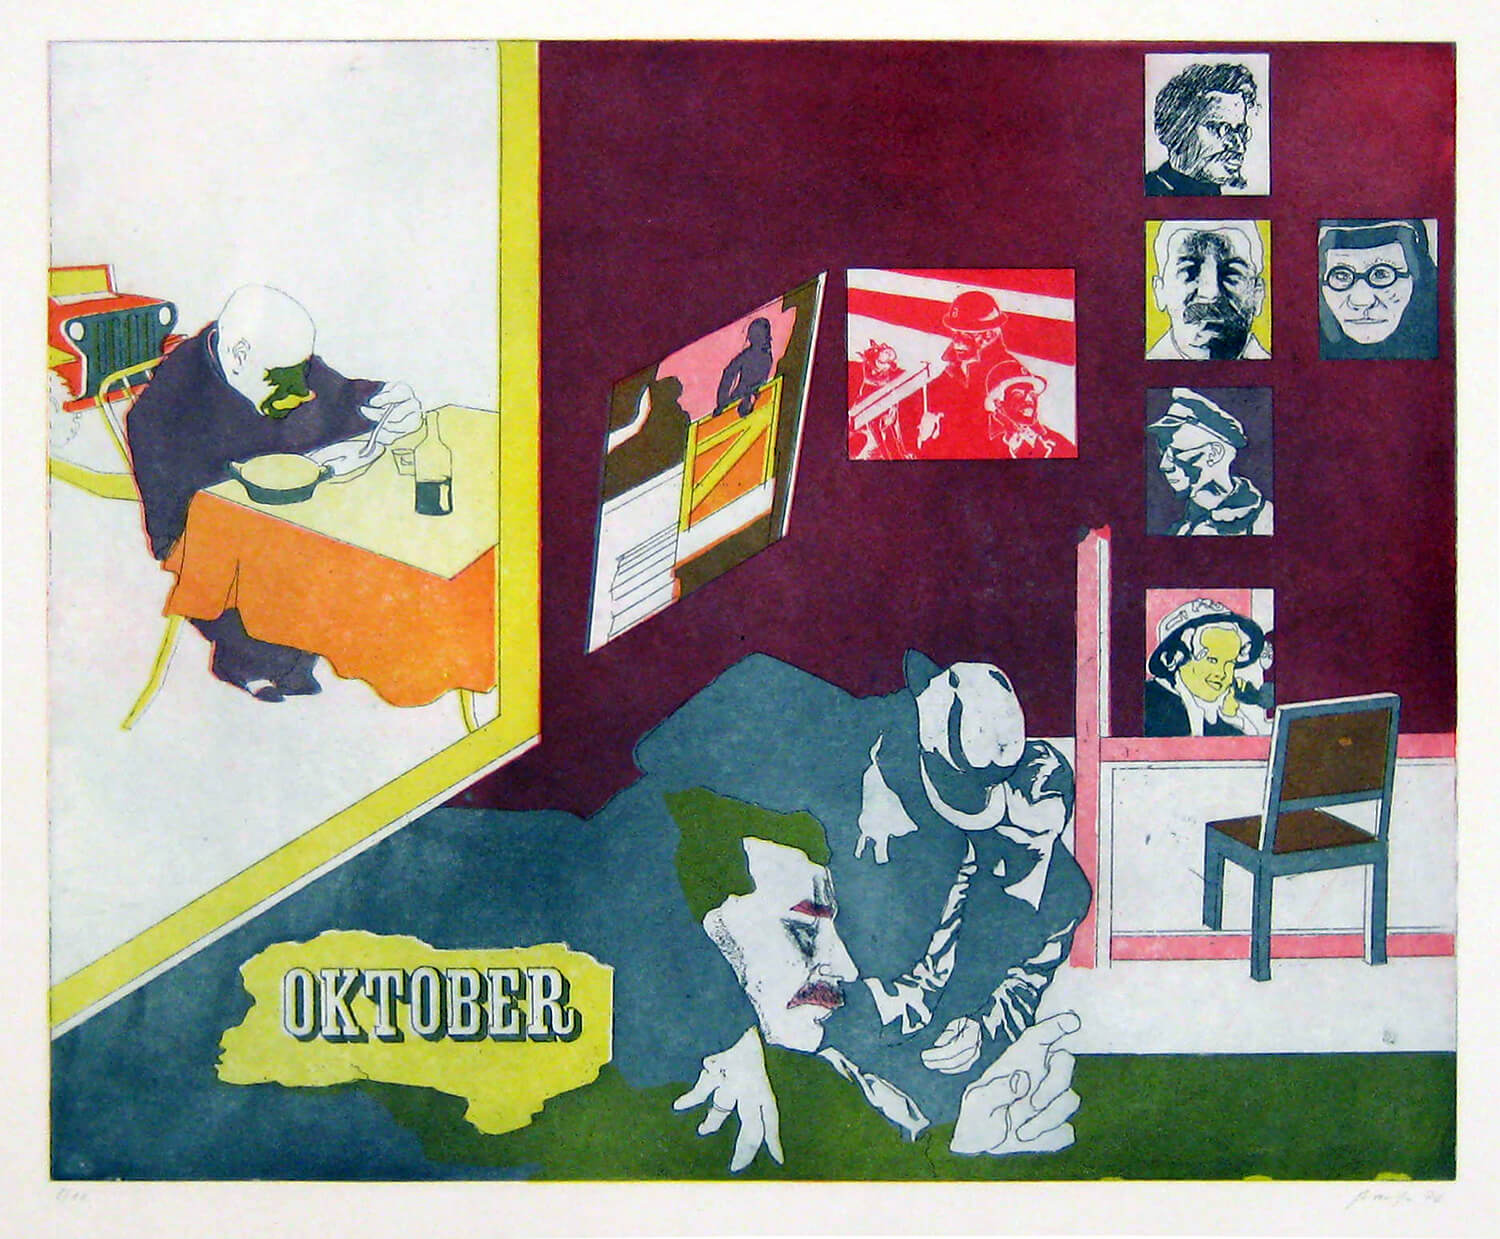 Ulrich Baehr, Ein Jahr aus dem Leben Stalins, Oktober, 1970, Farbradierung, Auflage: 10, 54 x 76 cm, Mappe mit 6 Motiven